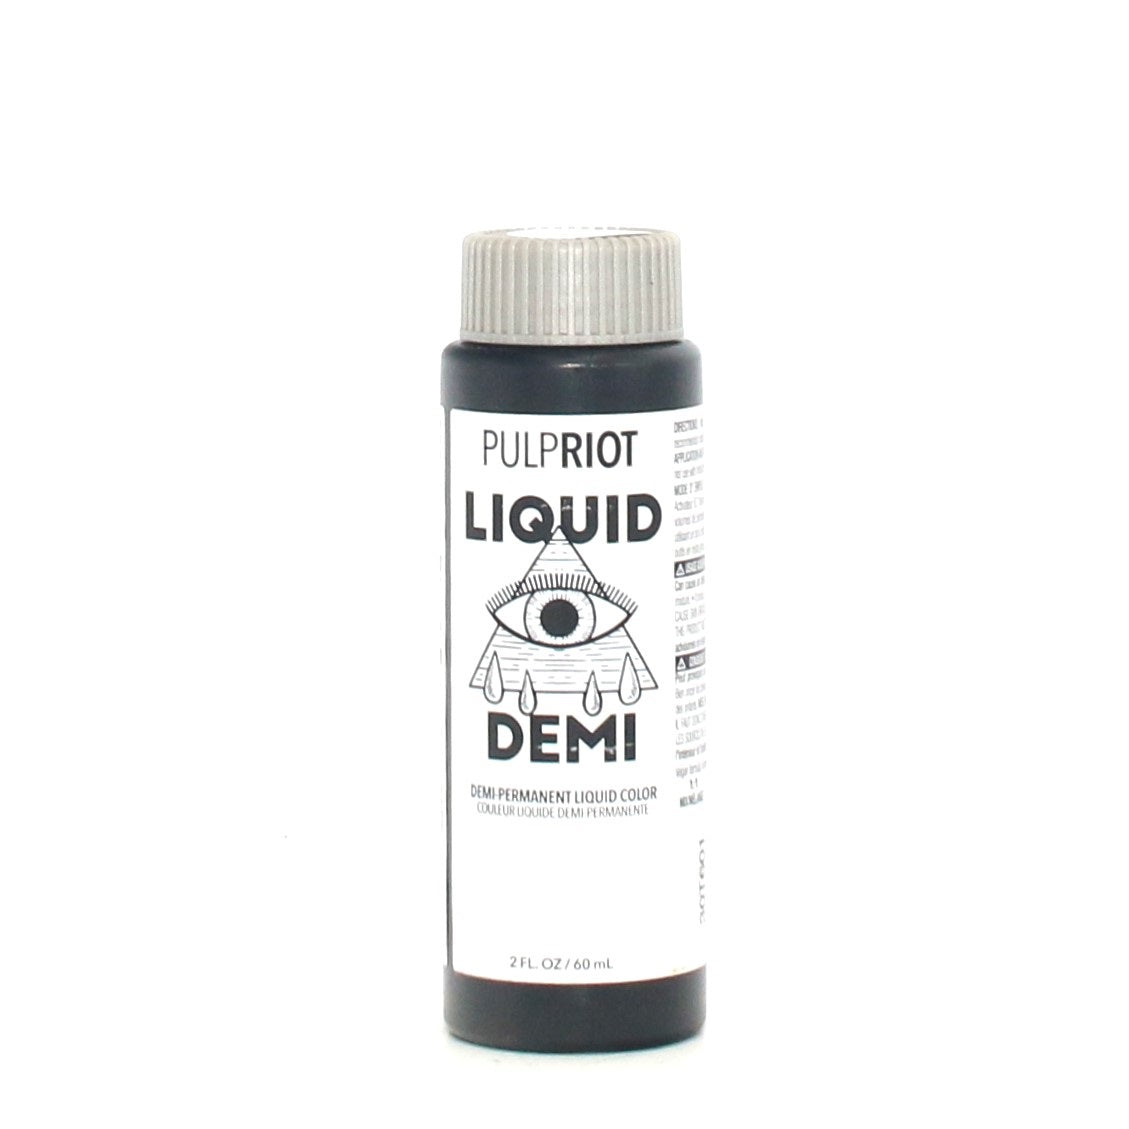 Pulp Riot Liquid Demi Permanent Color 2 oz